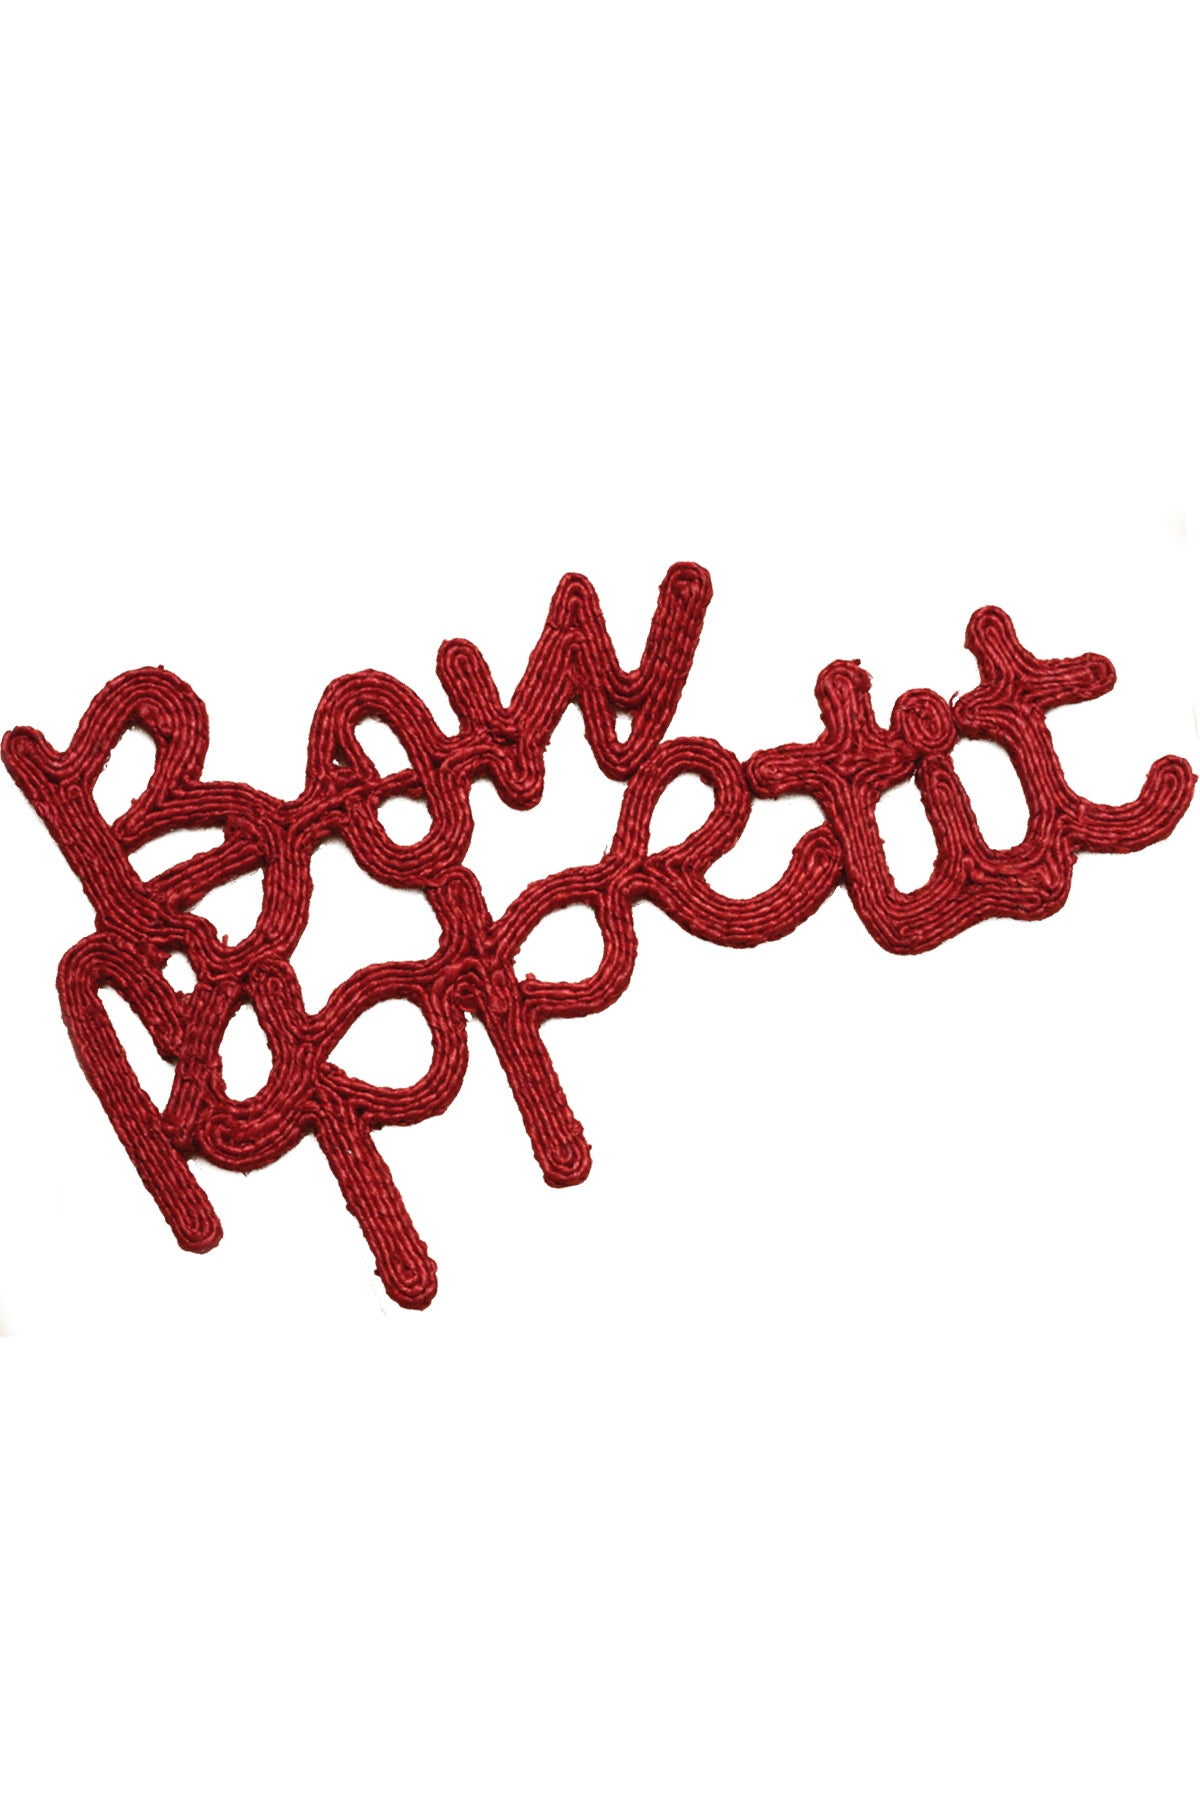 Bon Appetit Placemat - Red